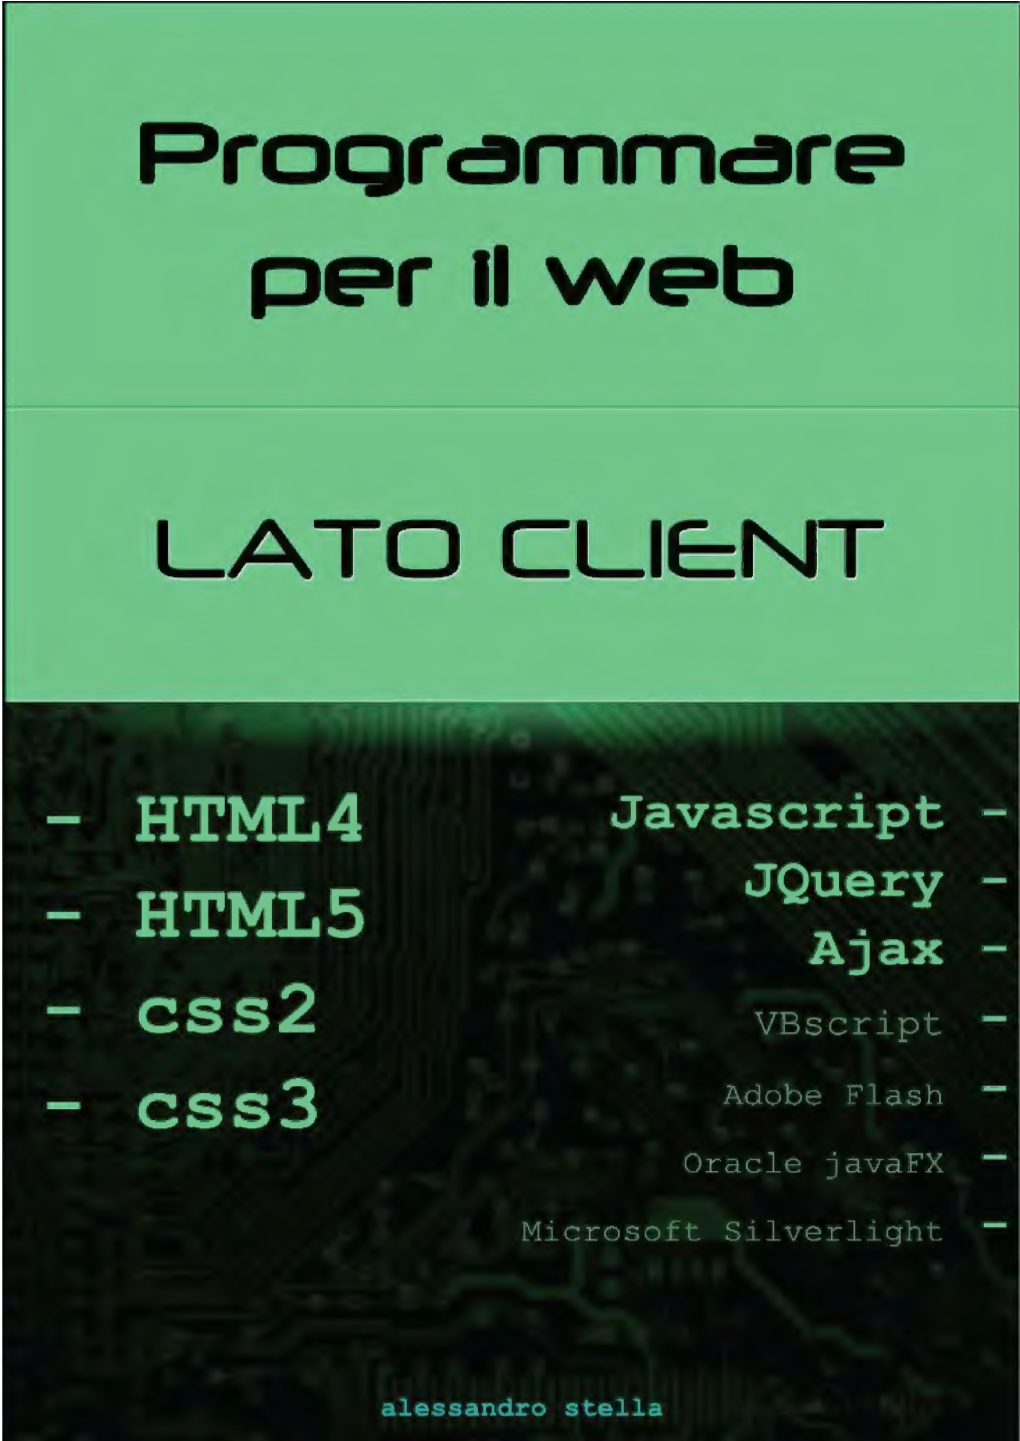 Programmare Per Il Web, Lato Client [Html, Css, Javascript, Jquery, Ajax]